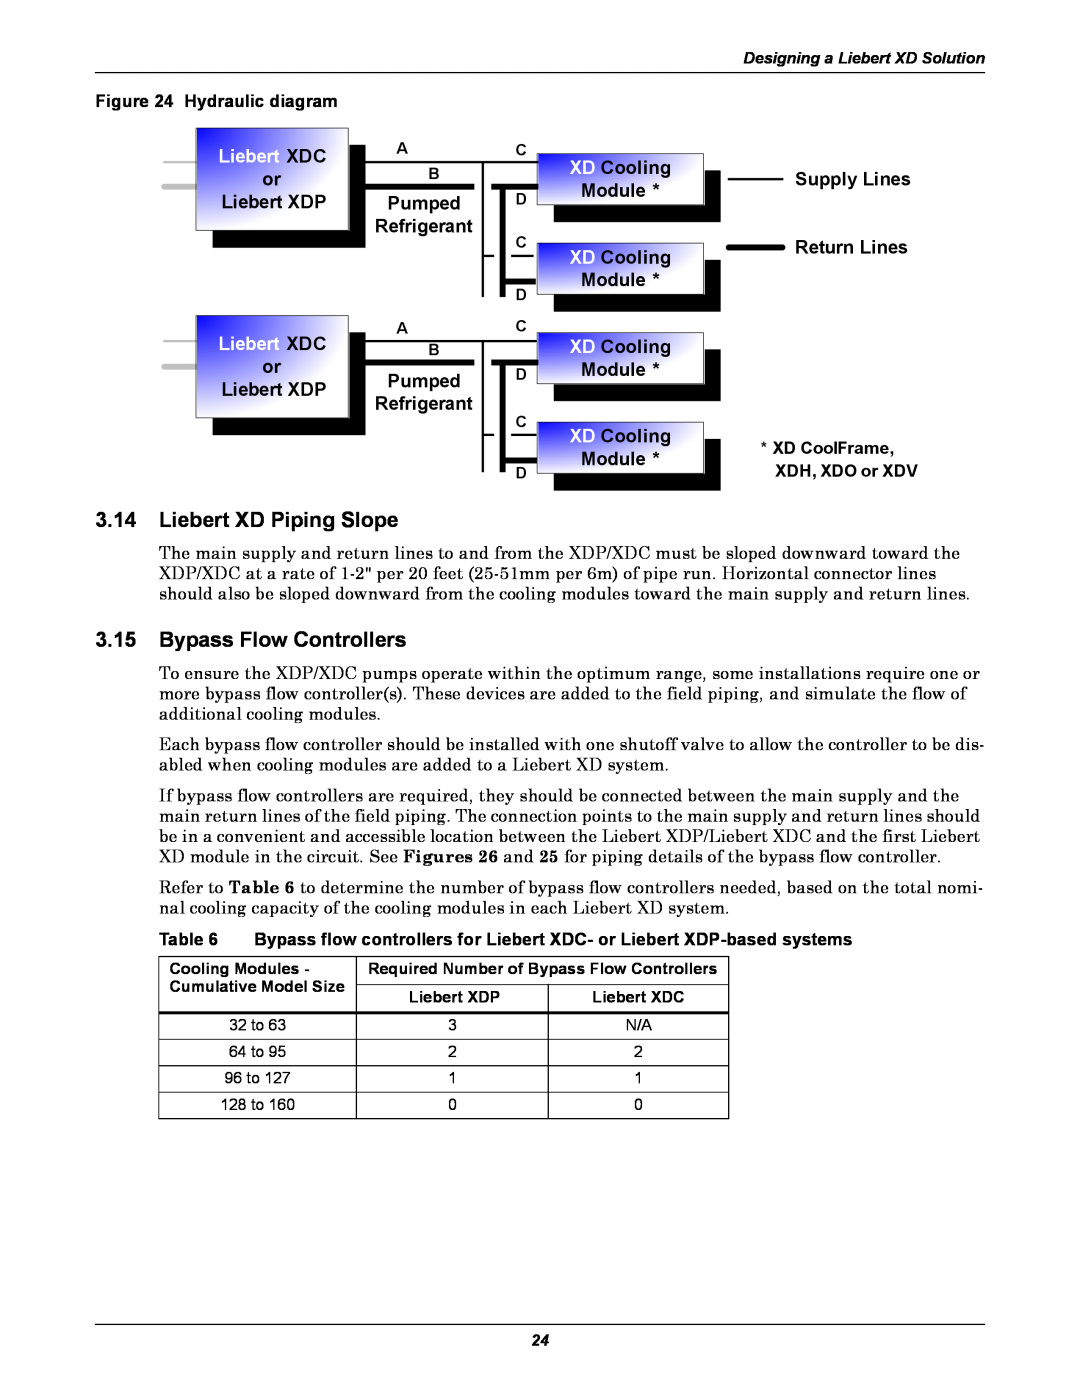 Emerson Xtreme Density manual Liebert XD Piping Slope, Bypass Flow Controllers, Liebert XDC, or Liebert XDP, Pumped, Module 